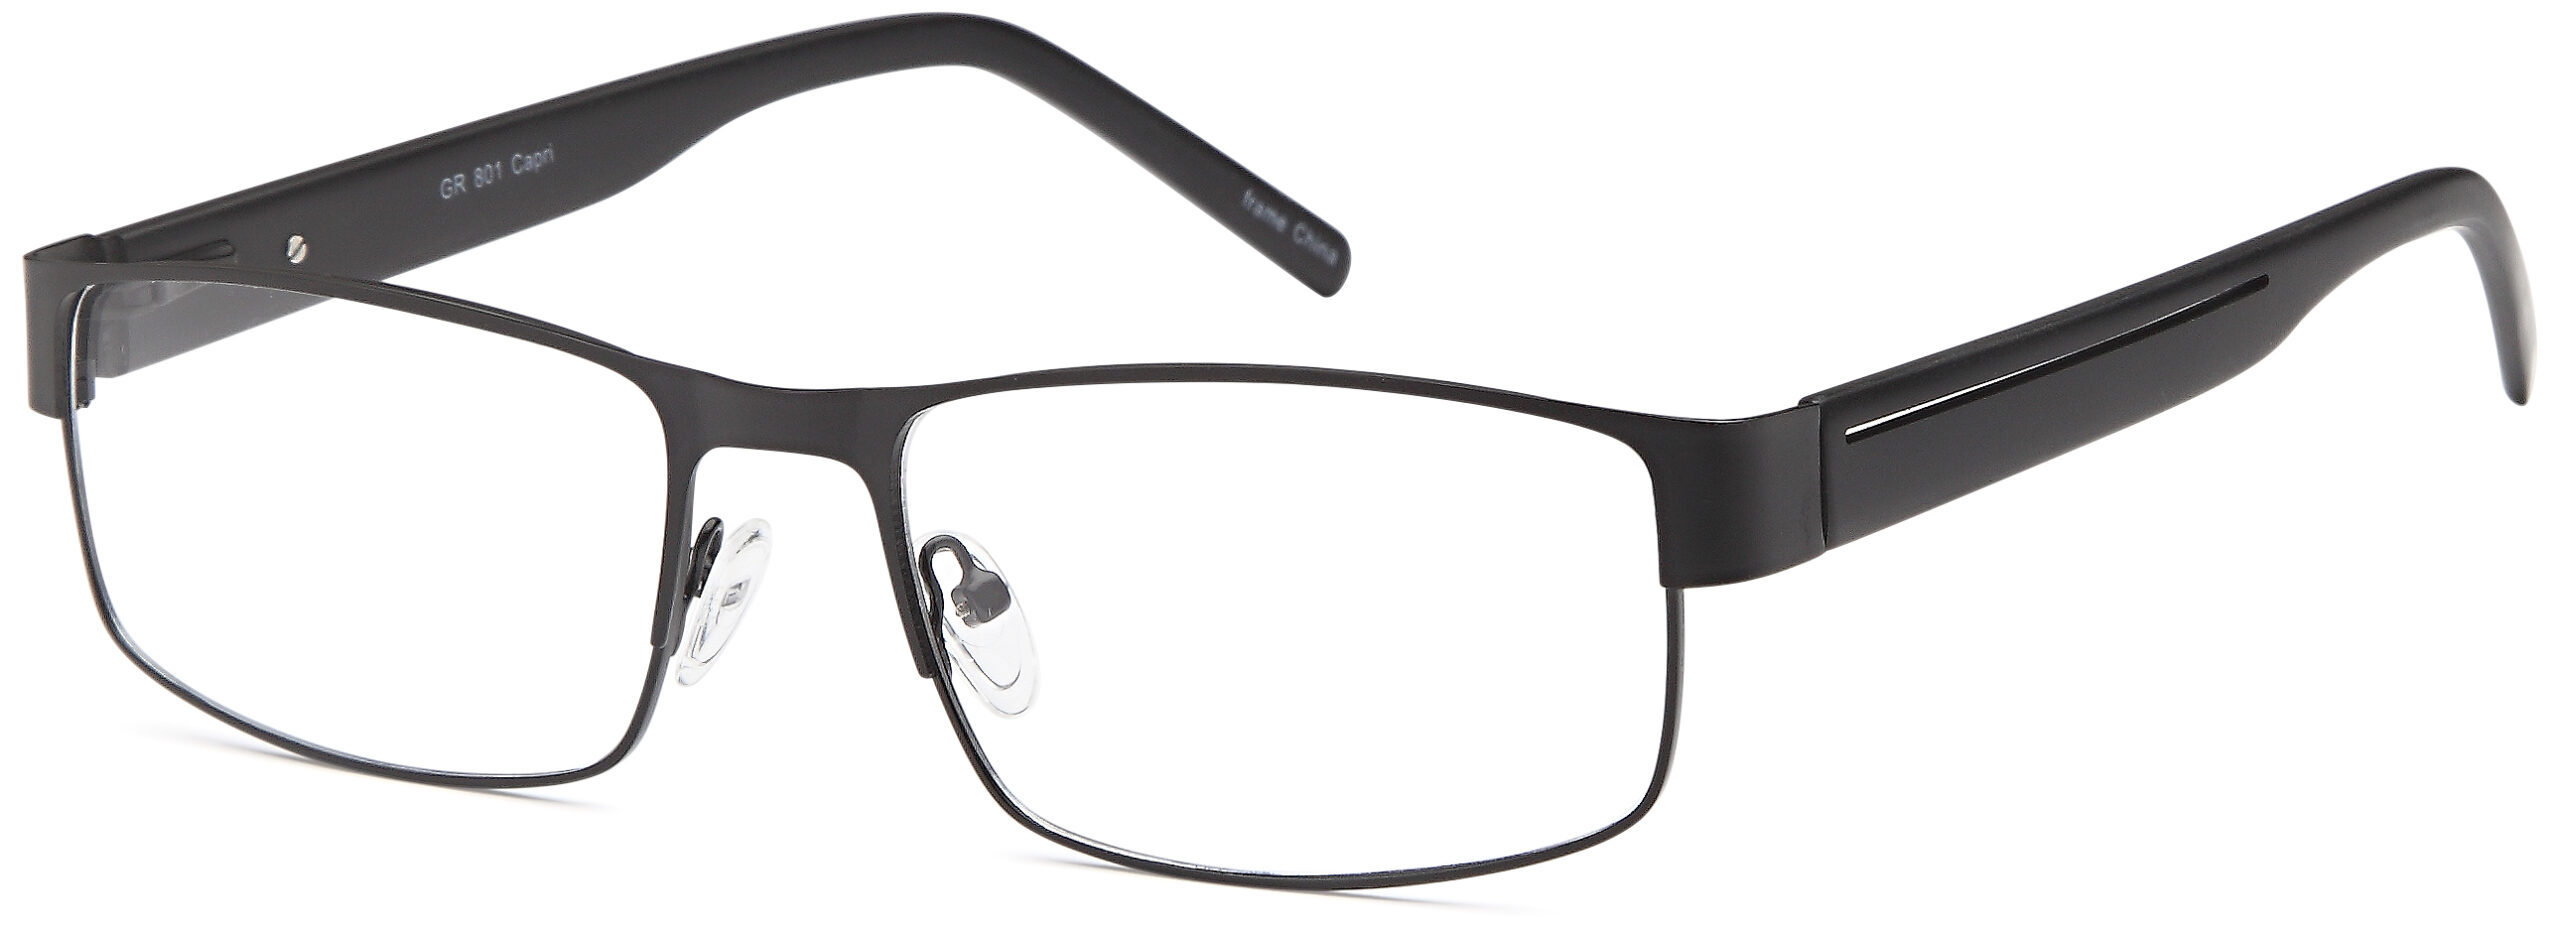 Picture of Grande Eyeglasses GR801